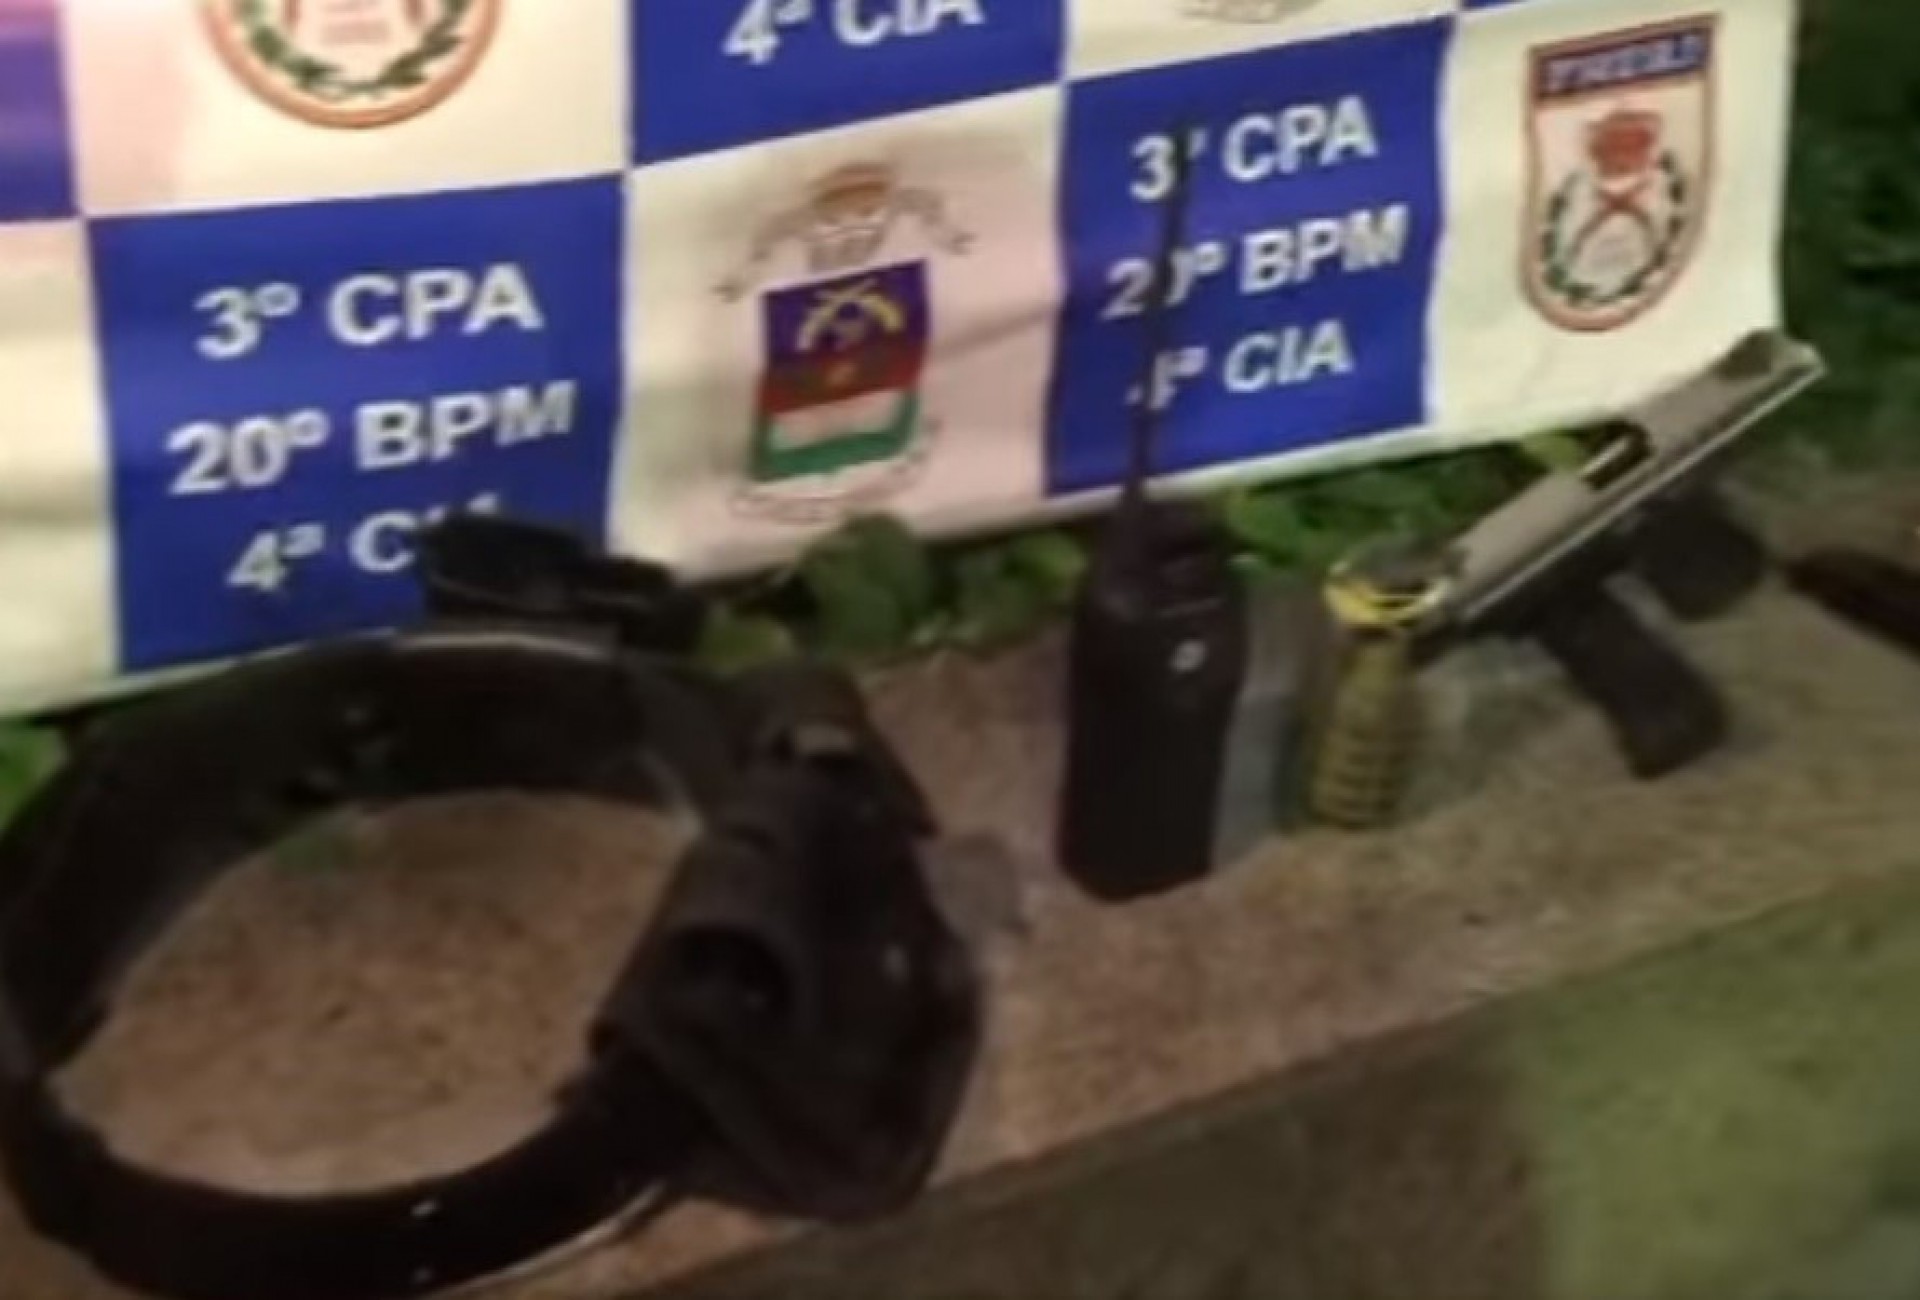 Policia Militar prende suspeito com armamento em Nova Iguaçu